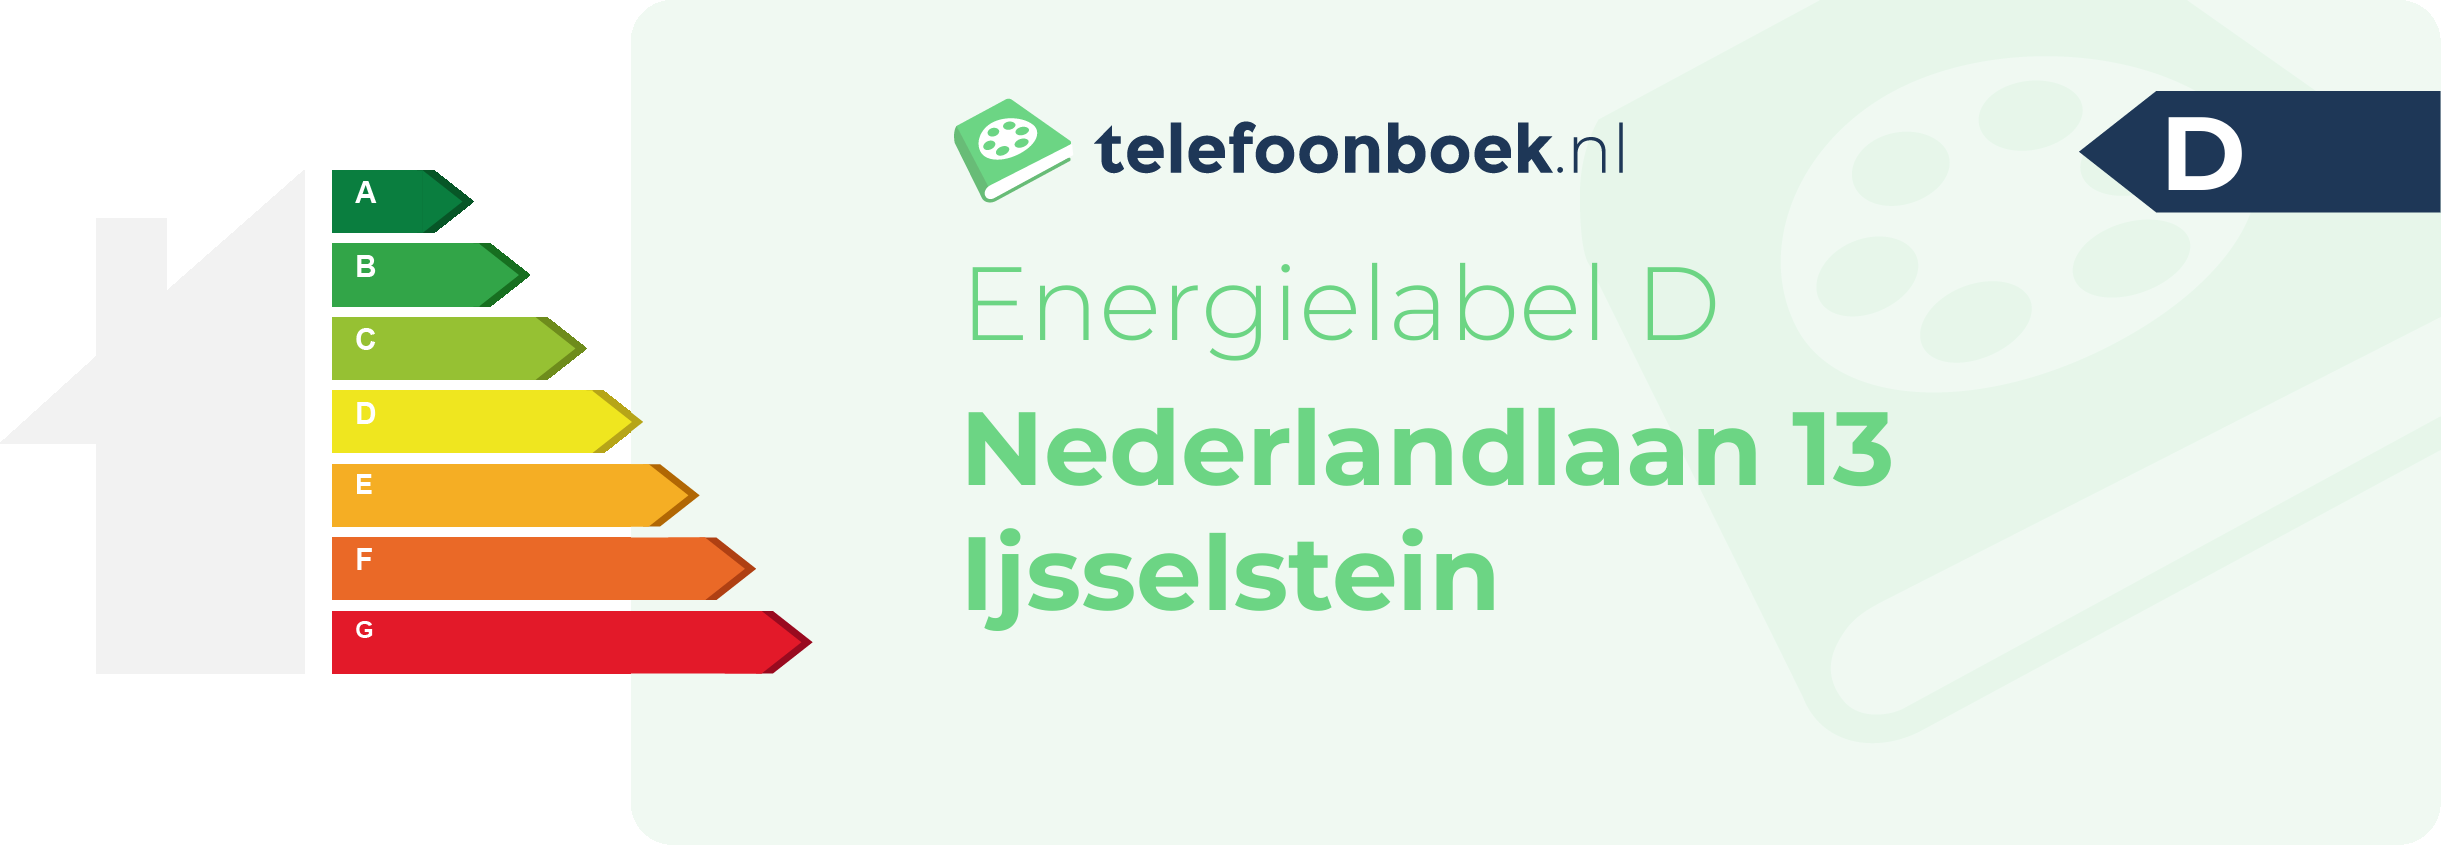 Energielabel Nederlandlaan 13 Ijsselstein